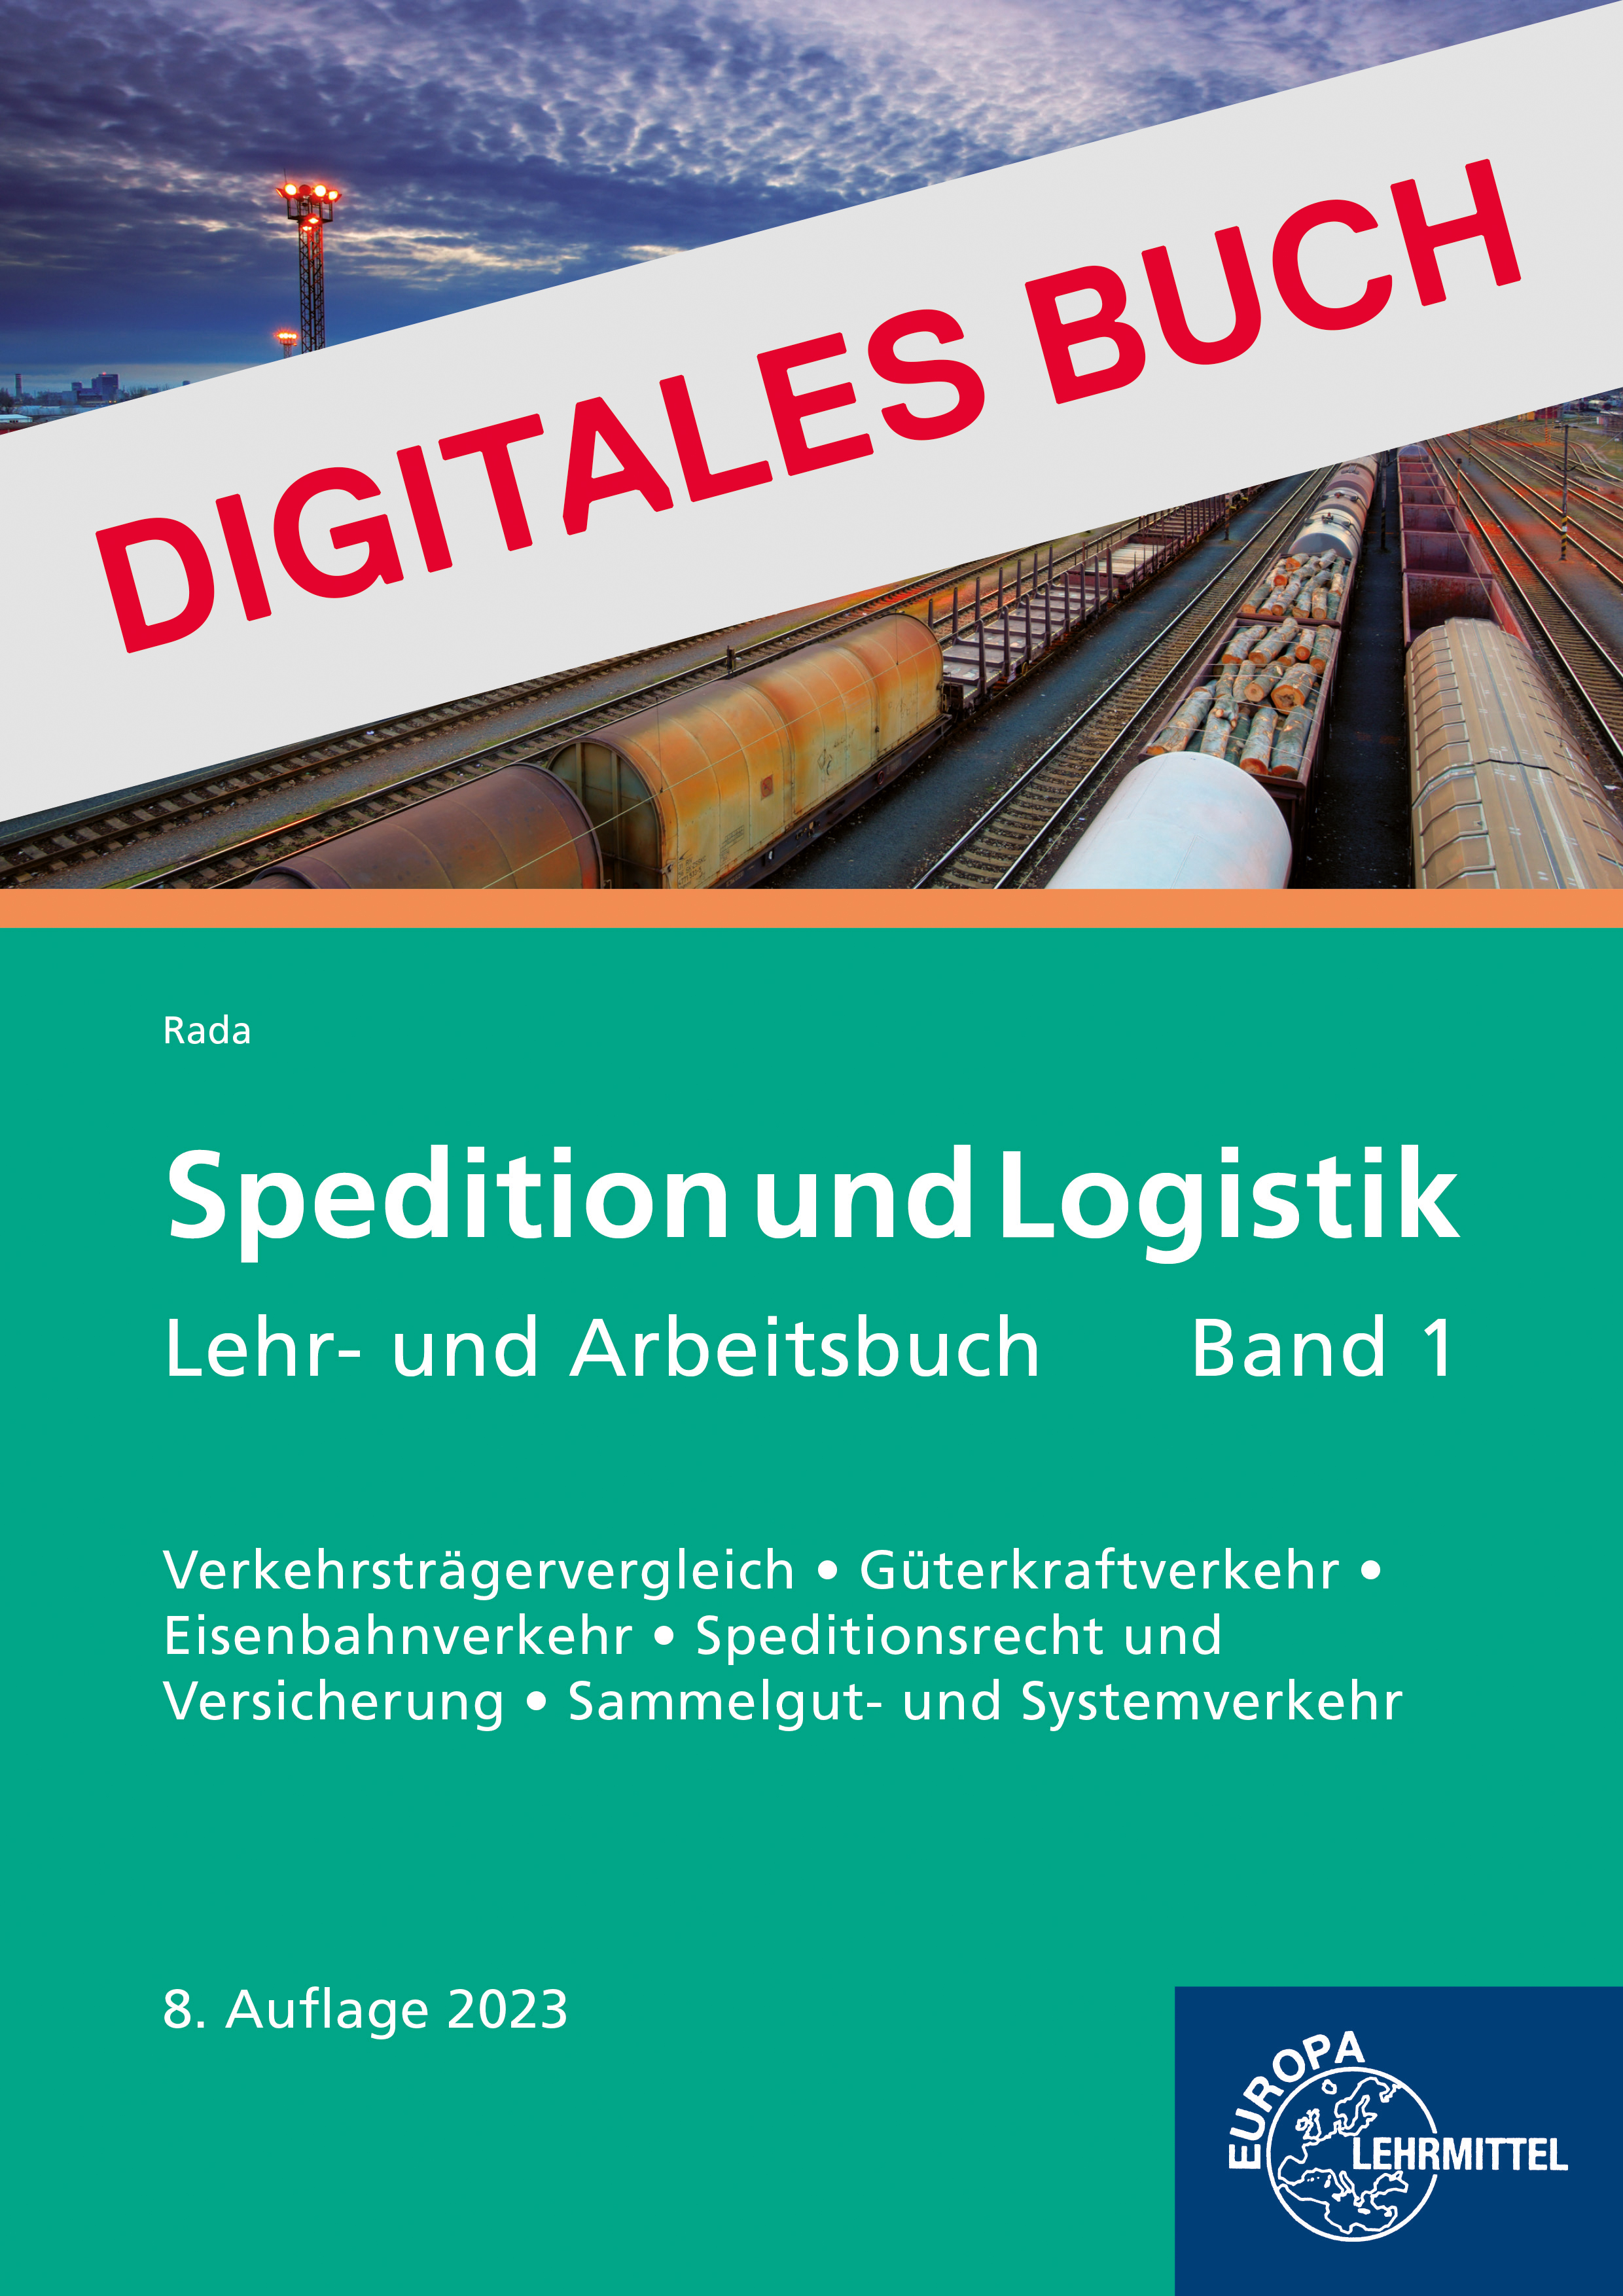 Spedition und Logistik Band 1 Grundlagen - Digitales Buch